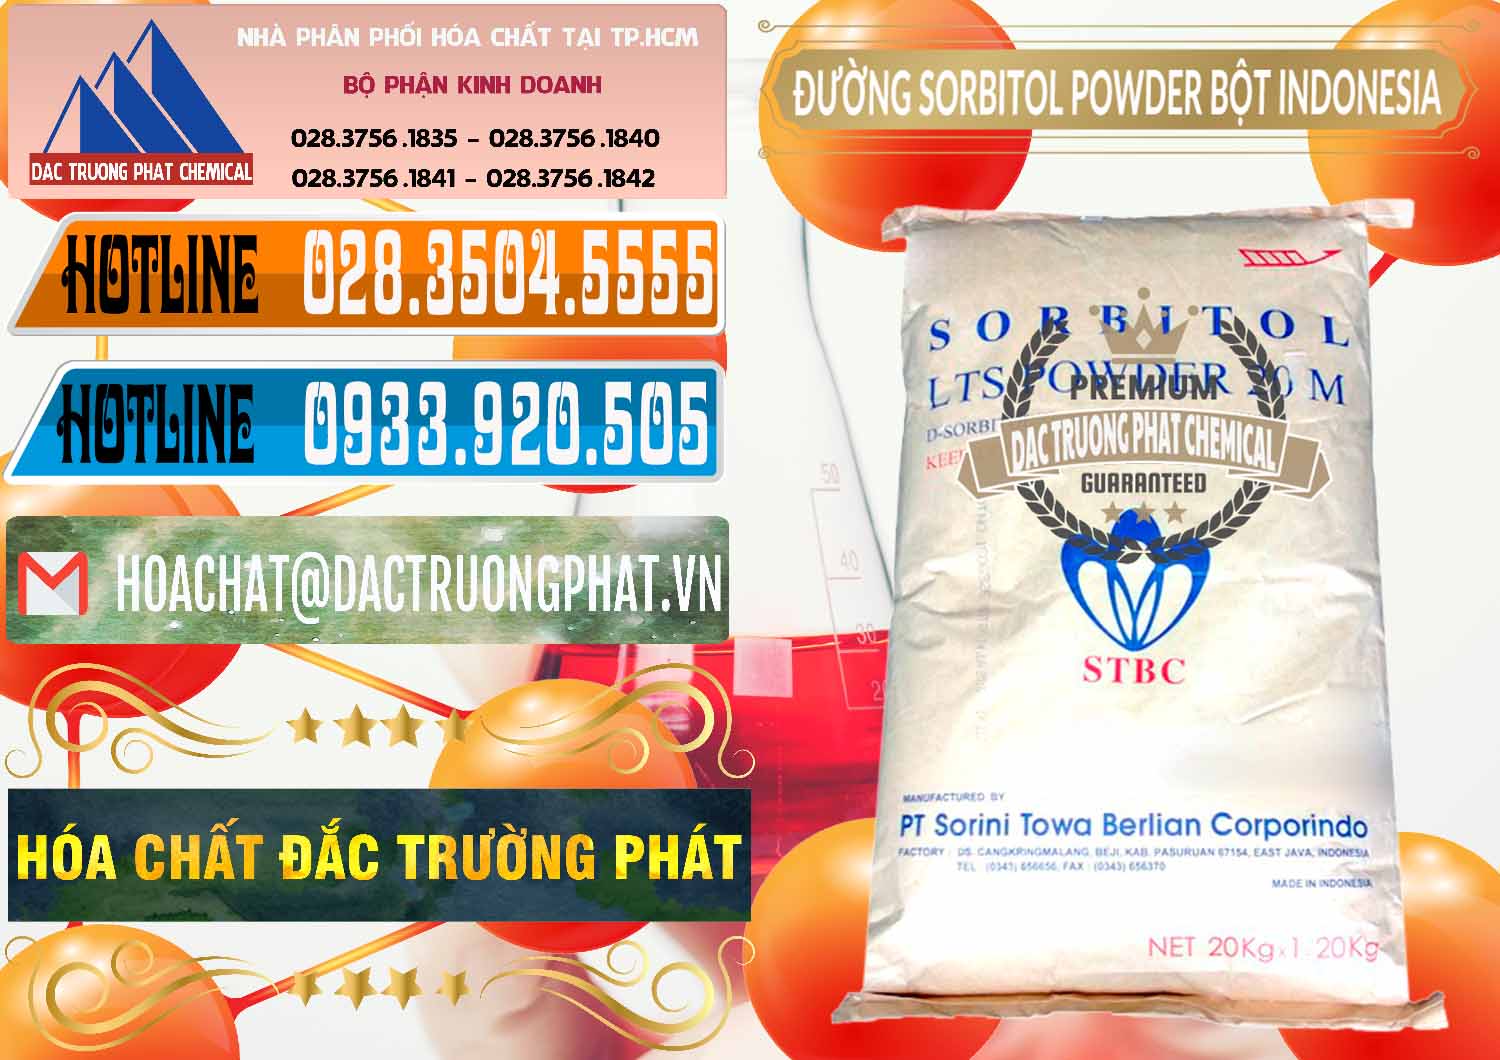 Chuyên kinh doanh & bán D-Sorbitol Bột - C6H14O6 Food Grade Indonesia - 0320 - Đơn vị kinh doanh & phân phối hóa chất tại TP.HCM - stmp.net